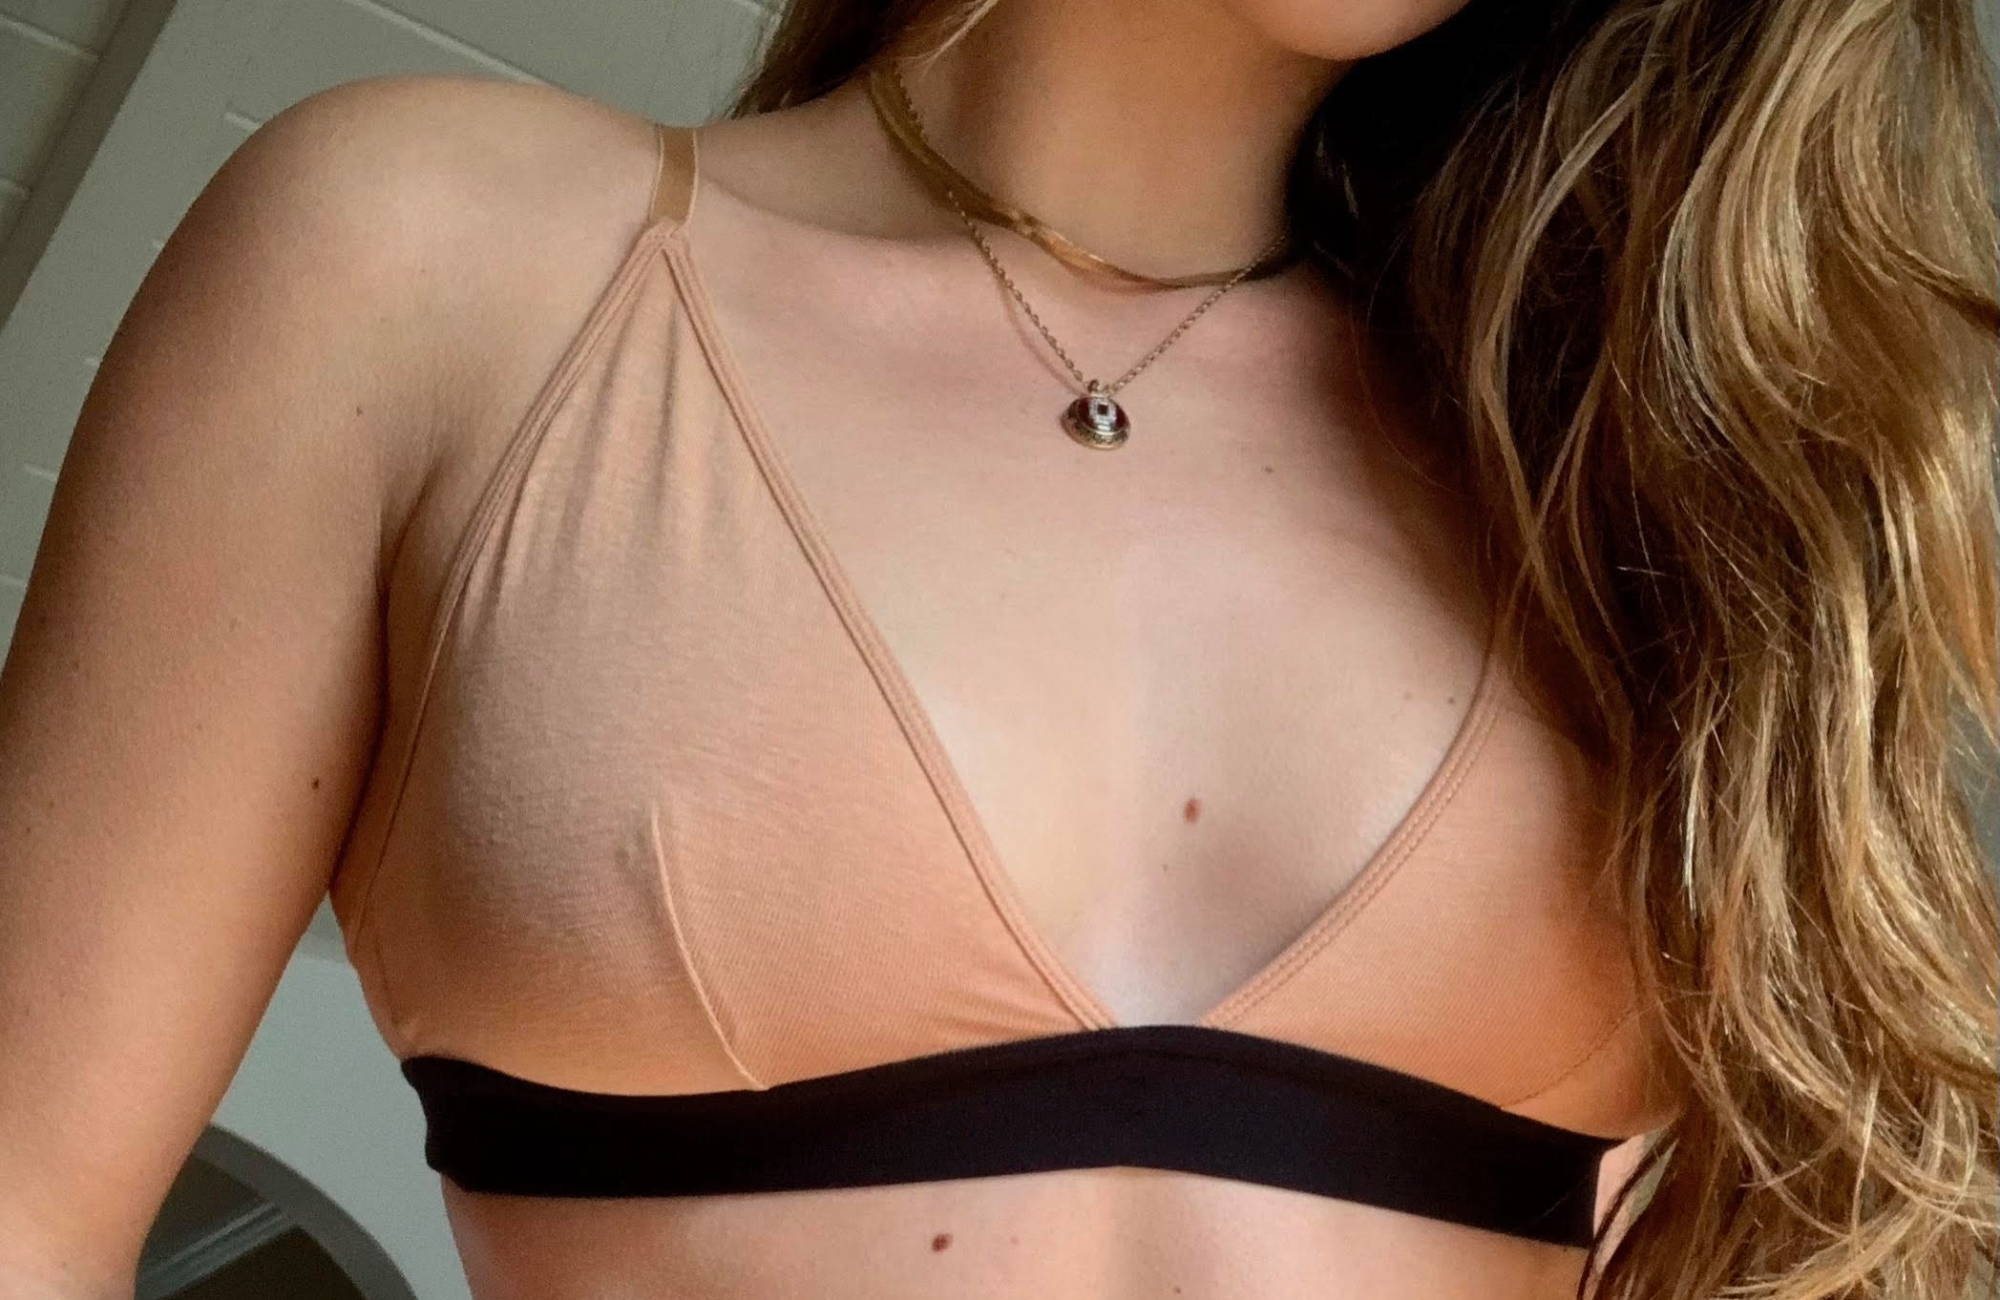 christine lichtenberg add how to undo front clasp bras photo